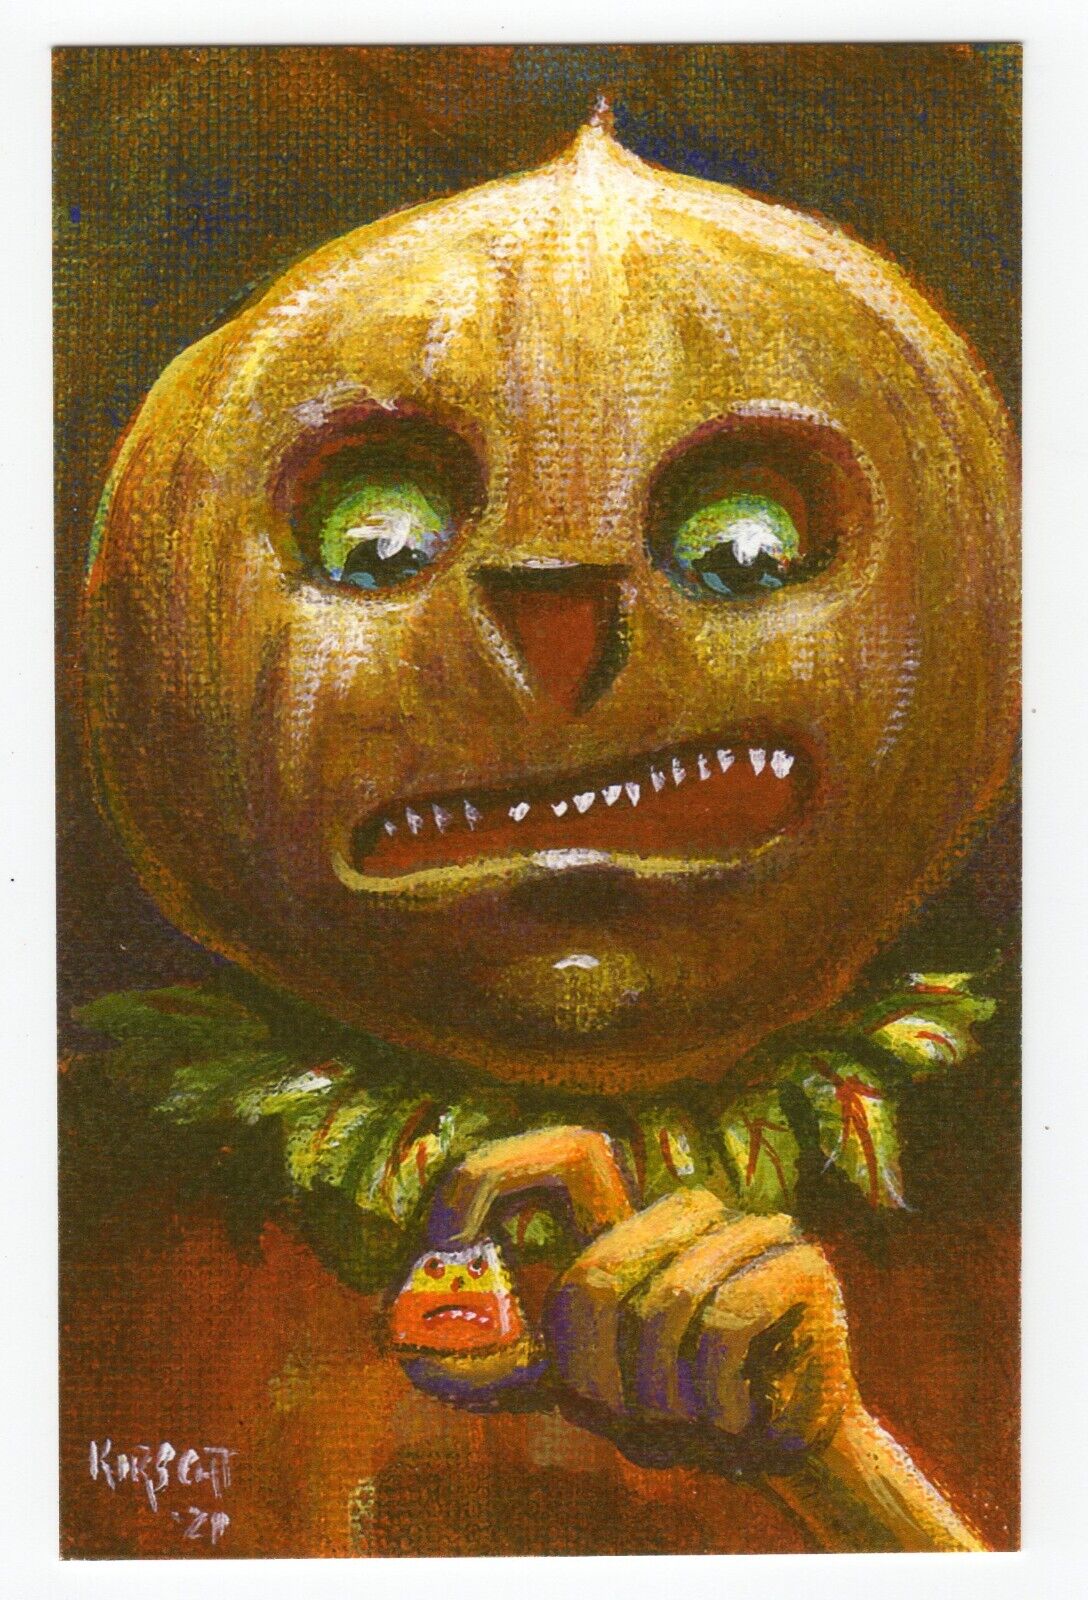 Halloween Postcard Matthew Kirscht 2022 The Dare 8/18 Flat